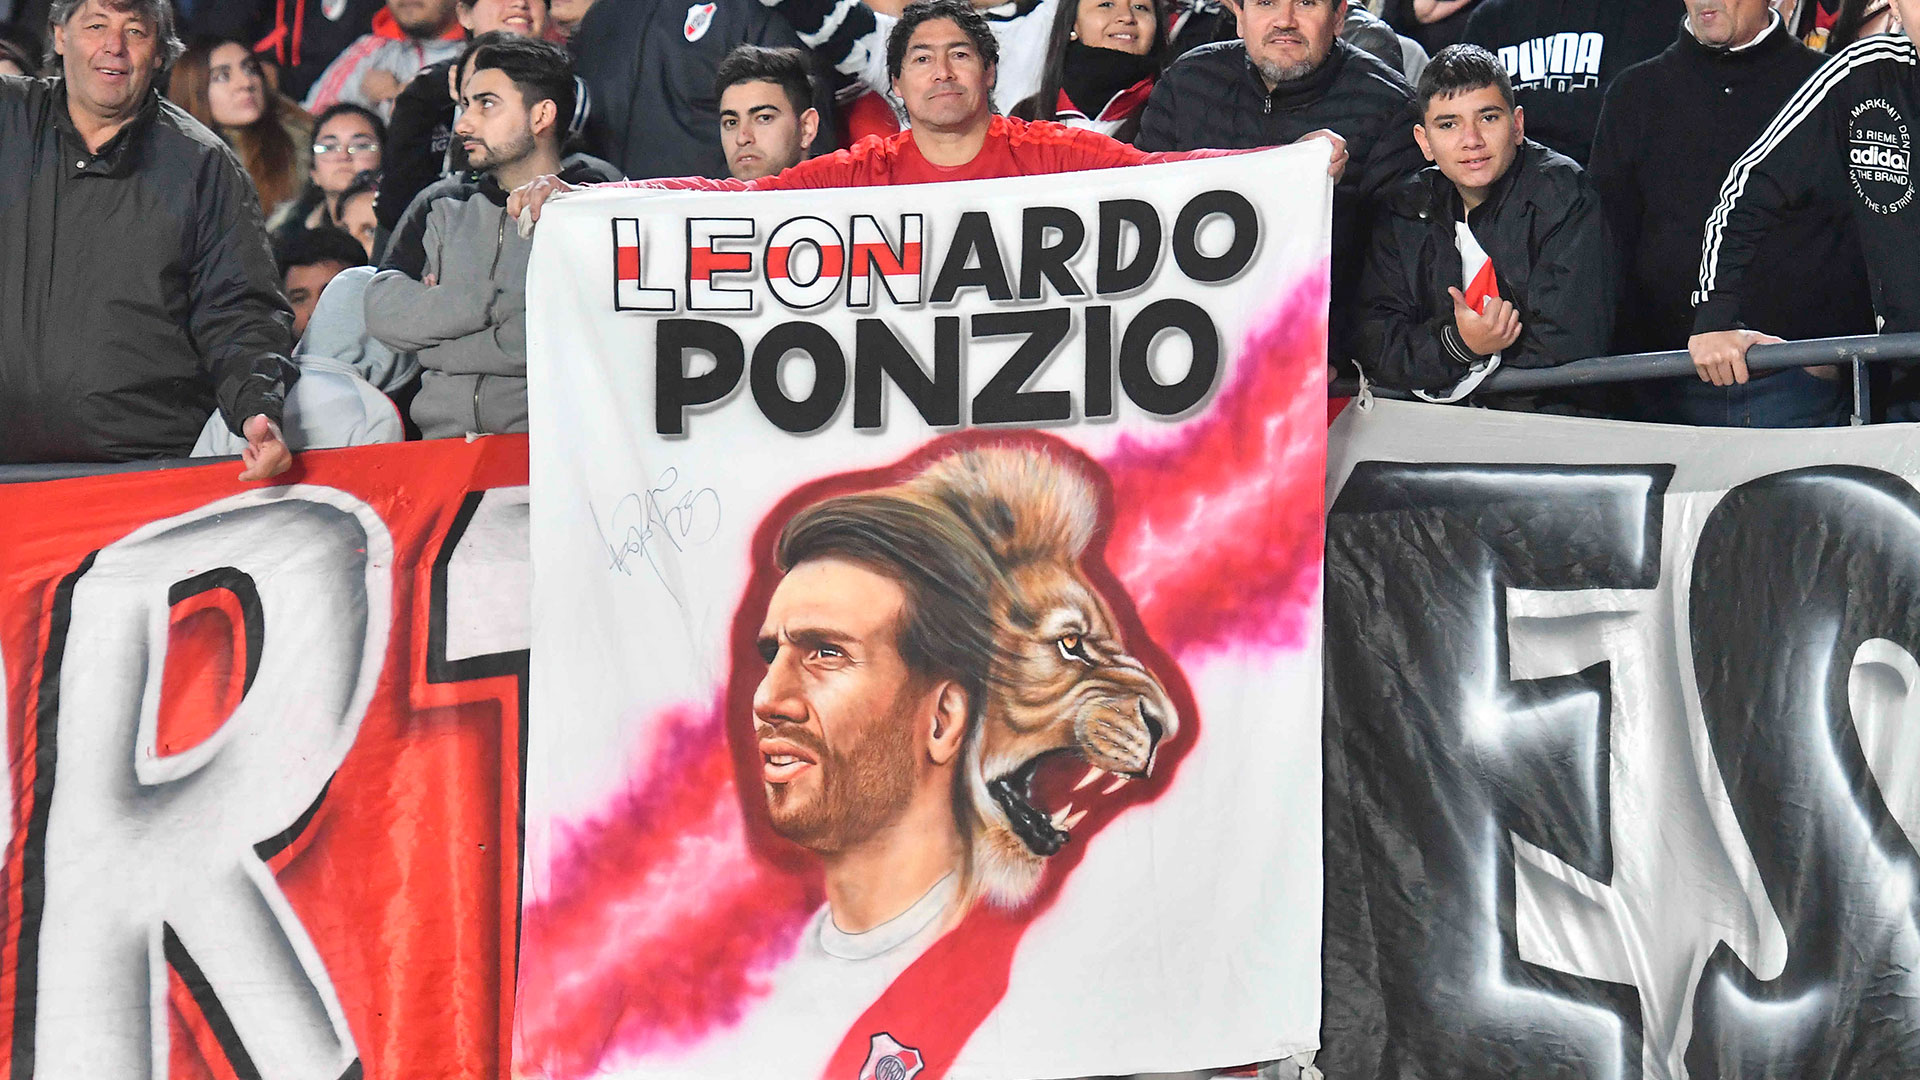 Llegó el día. Después de tanta ansiedad y espera, Leonardo Ponzio tuvo su homenaje en el Monumental. Con el arribo de la primavera, el León se despidió de la práctica profesional rodeado de amigos y leyendas de River Plate
